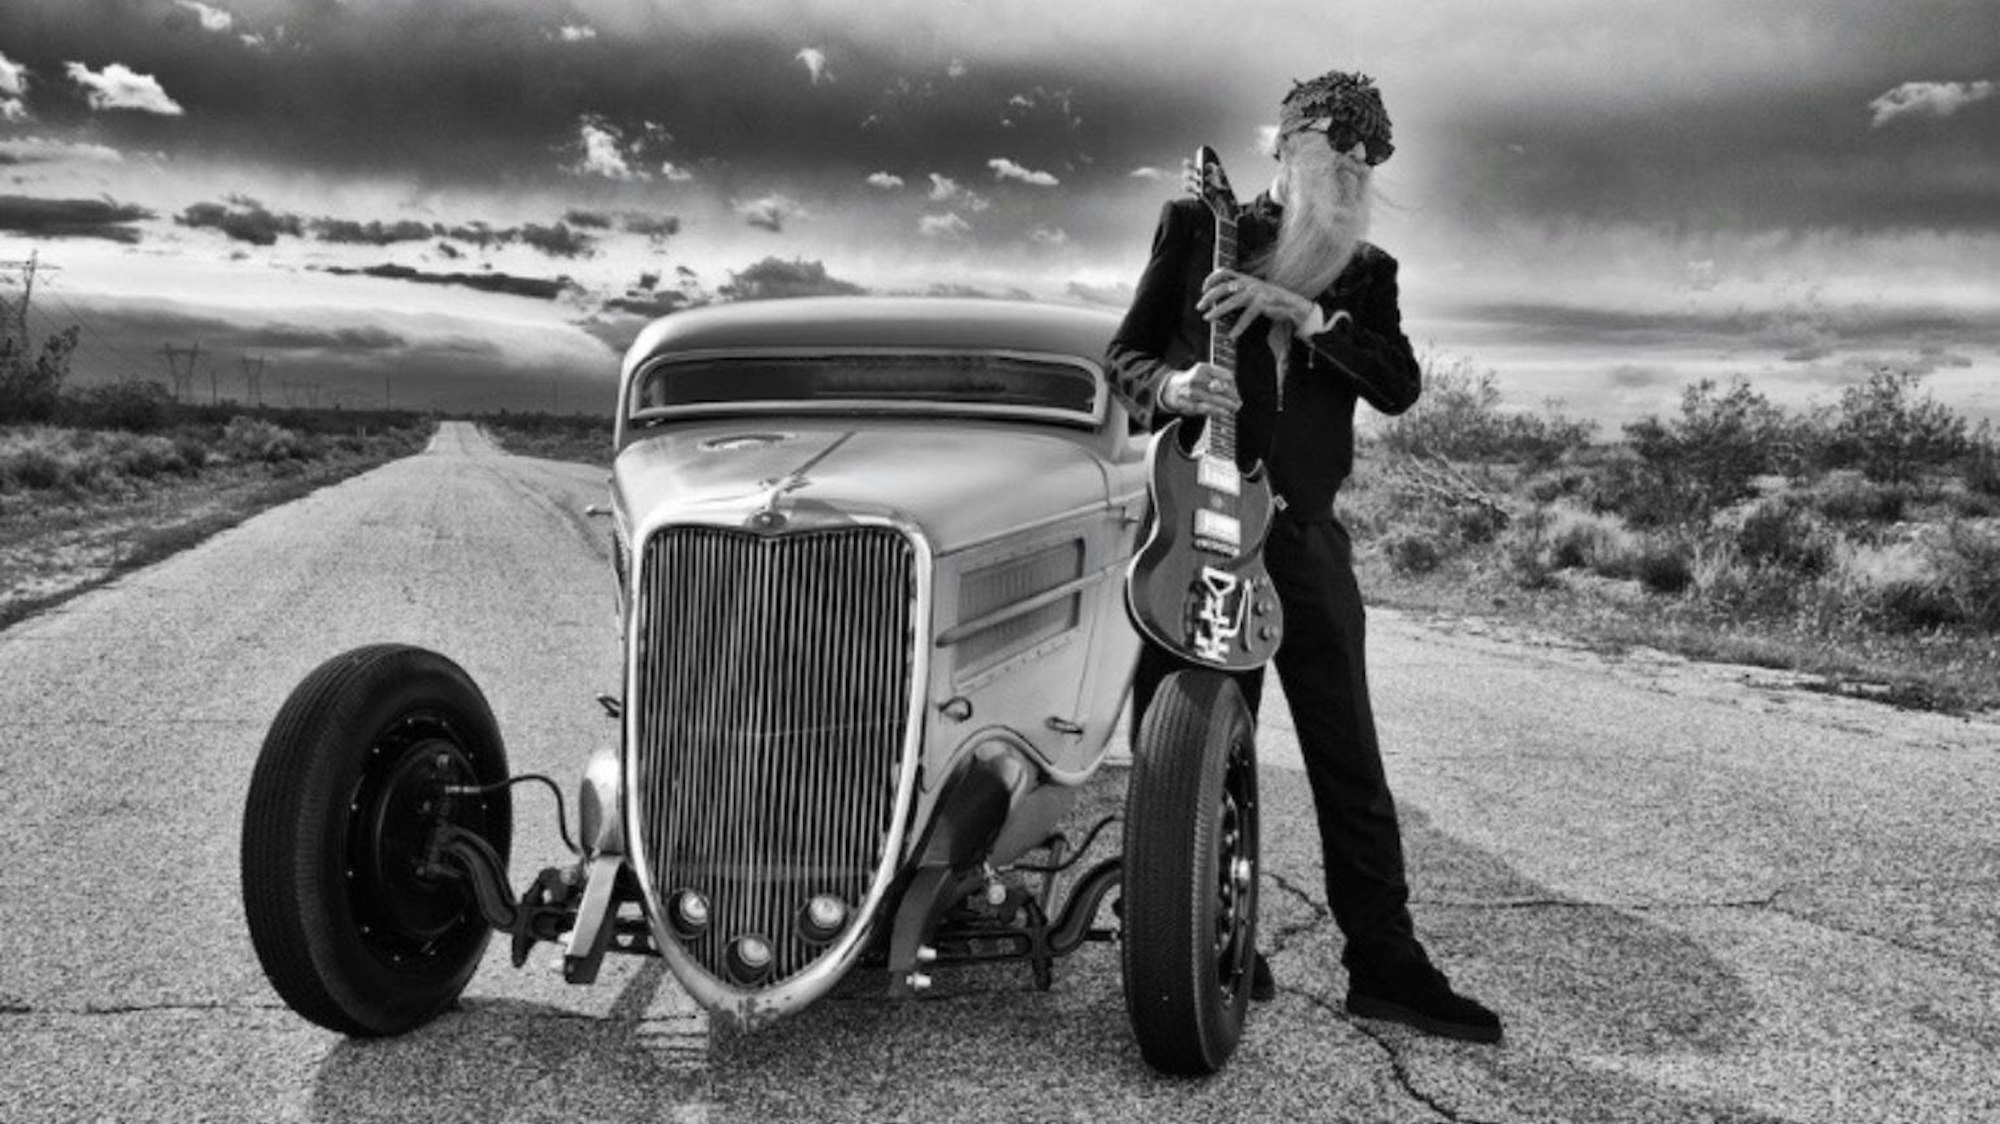 ZZ-Top-Gitarrist Billy F. Gibbons steht neben seinem Hot-Rod-Auto auf einer Wüstenstraße in den USA. In den Händen hält er seine E-Gitarre, aufgestützt auf einem Vordereifen des Wagens.